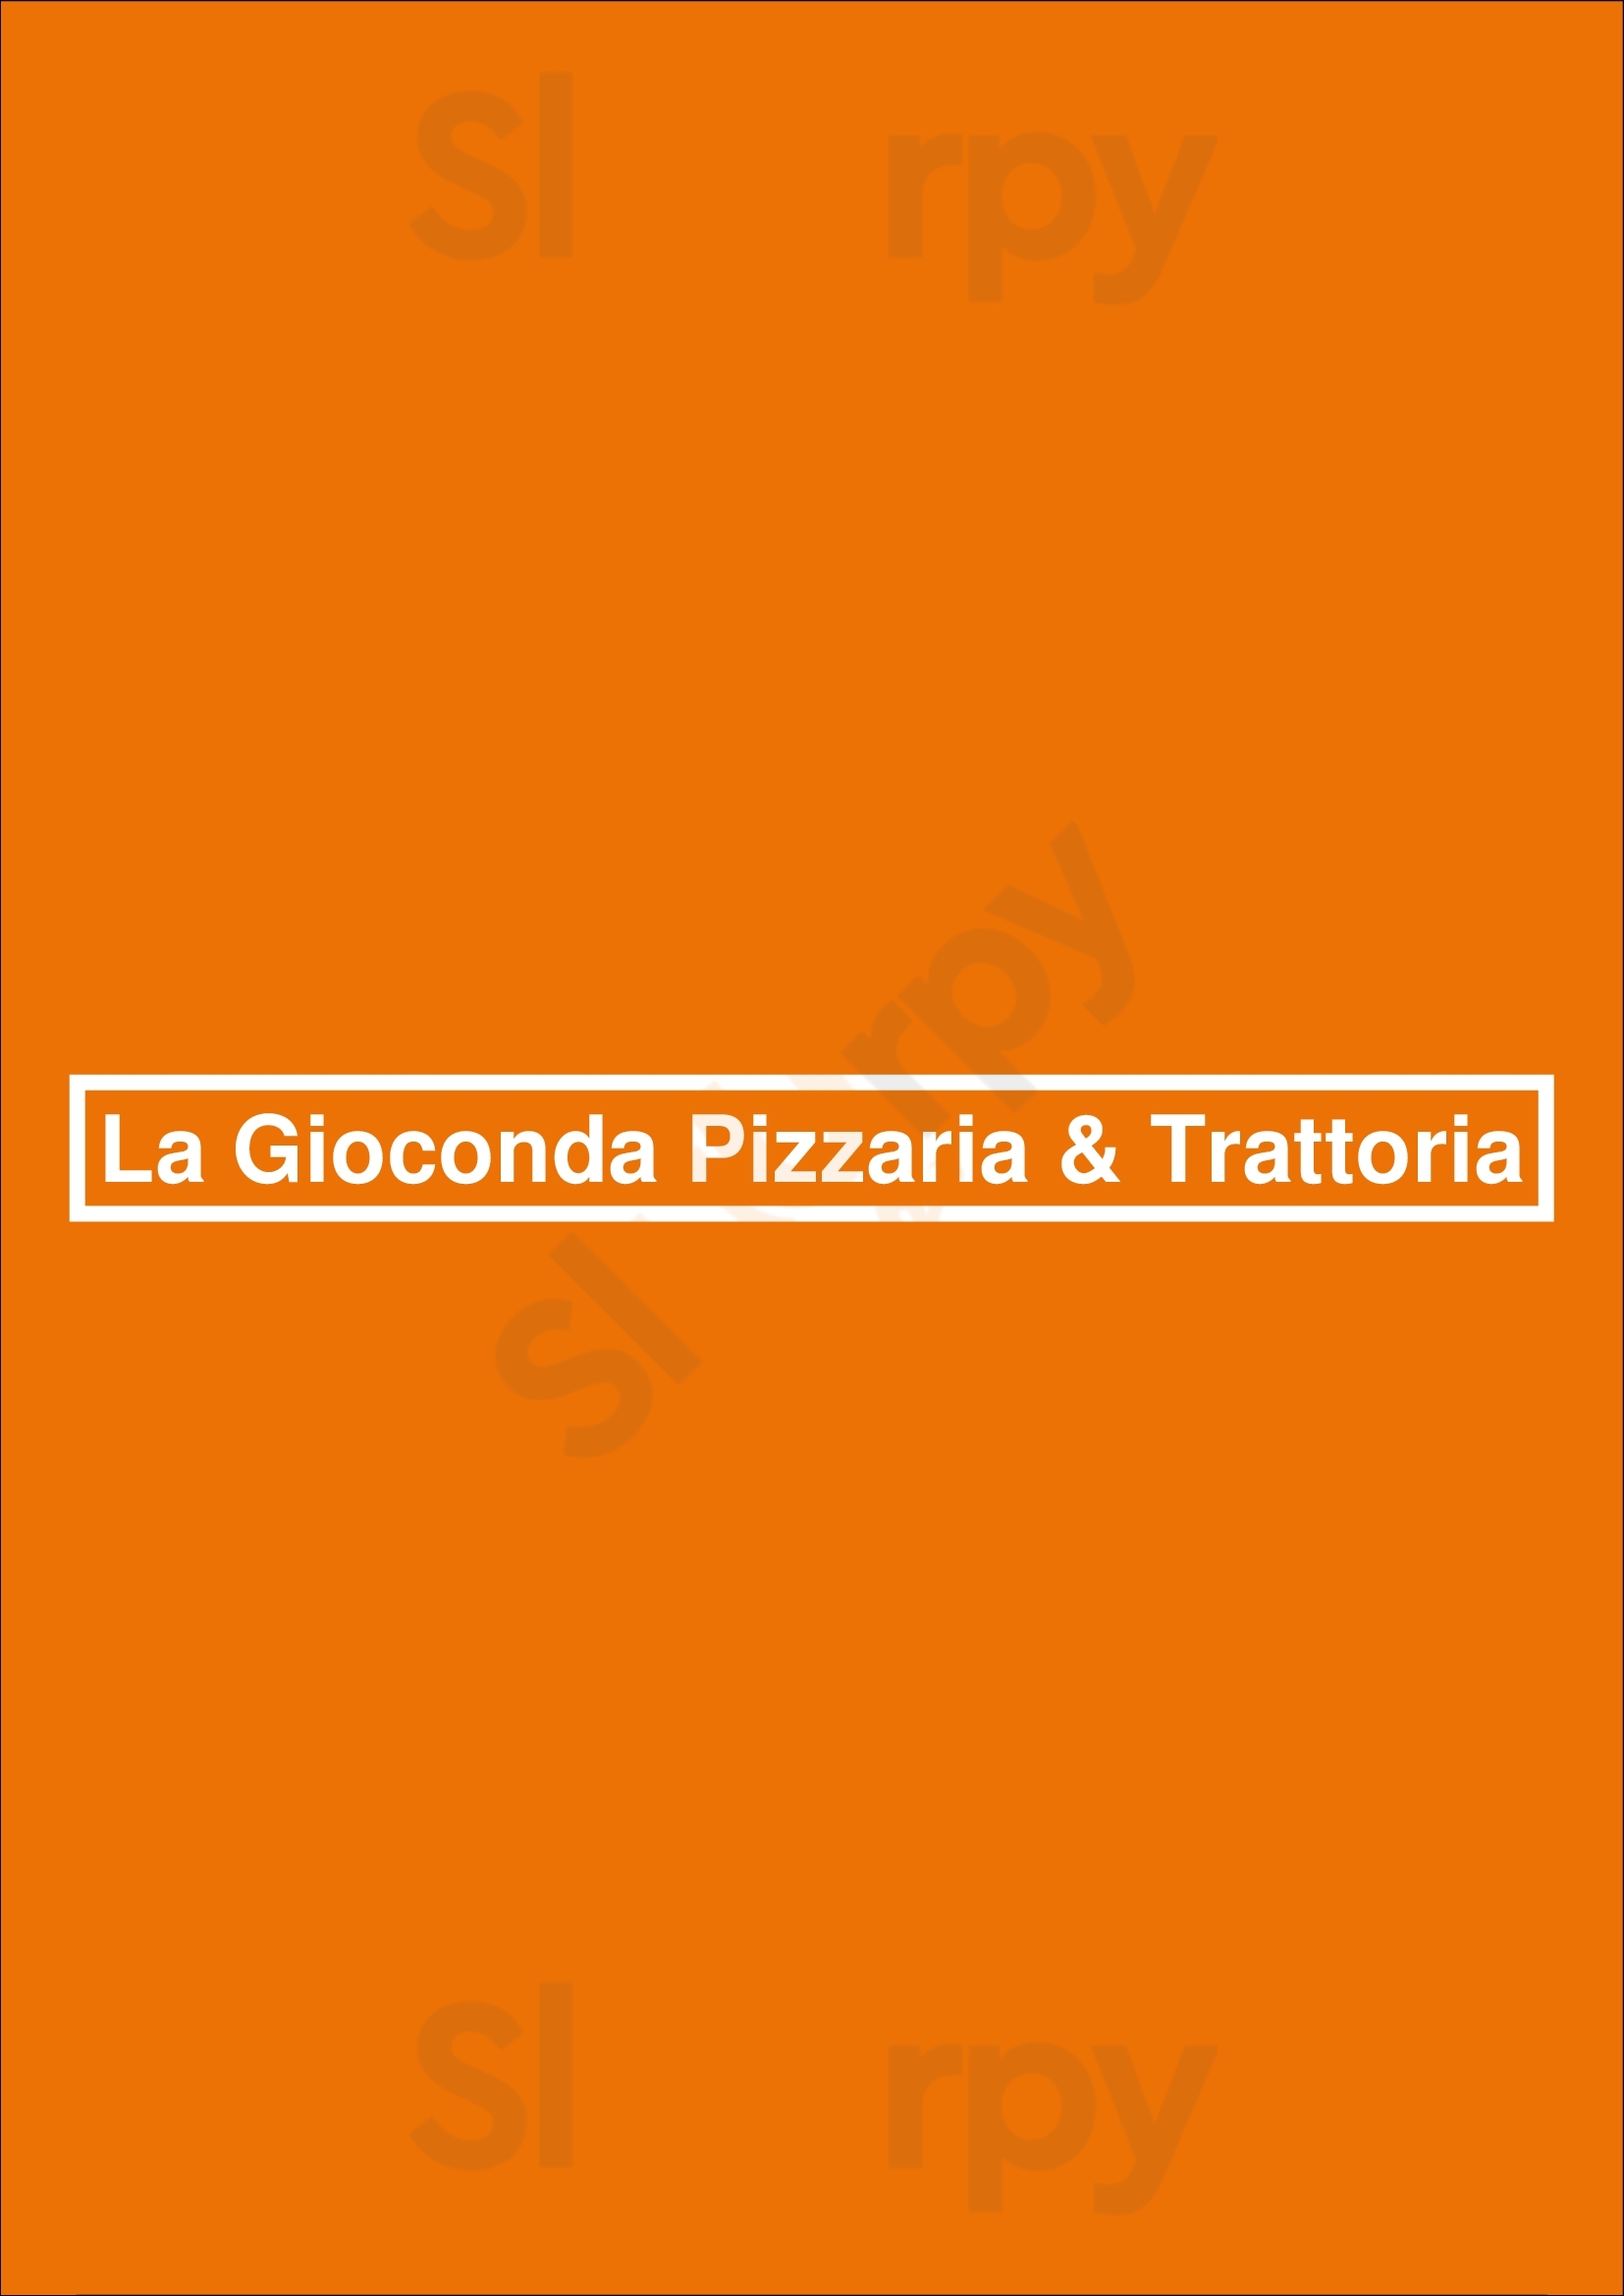 La Gioconda Pizzaria & Trattoria Praia da Rocha Menu - 1